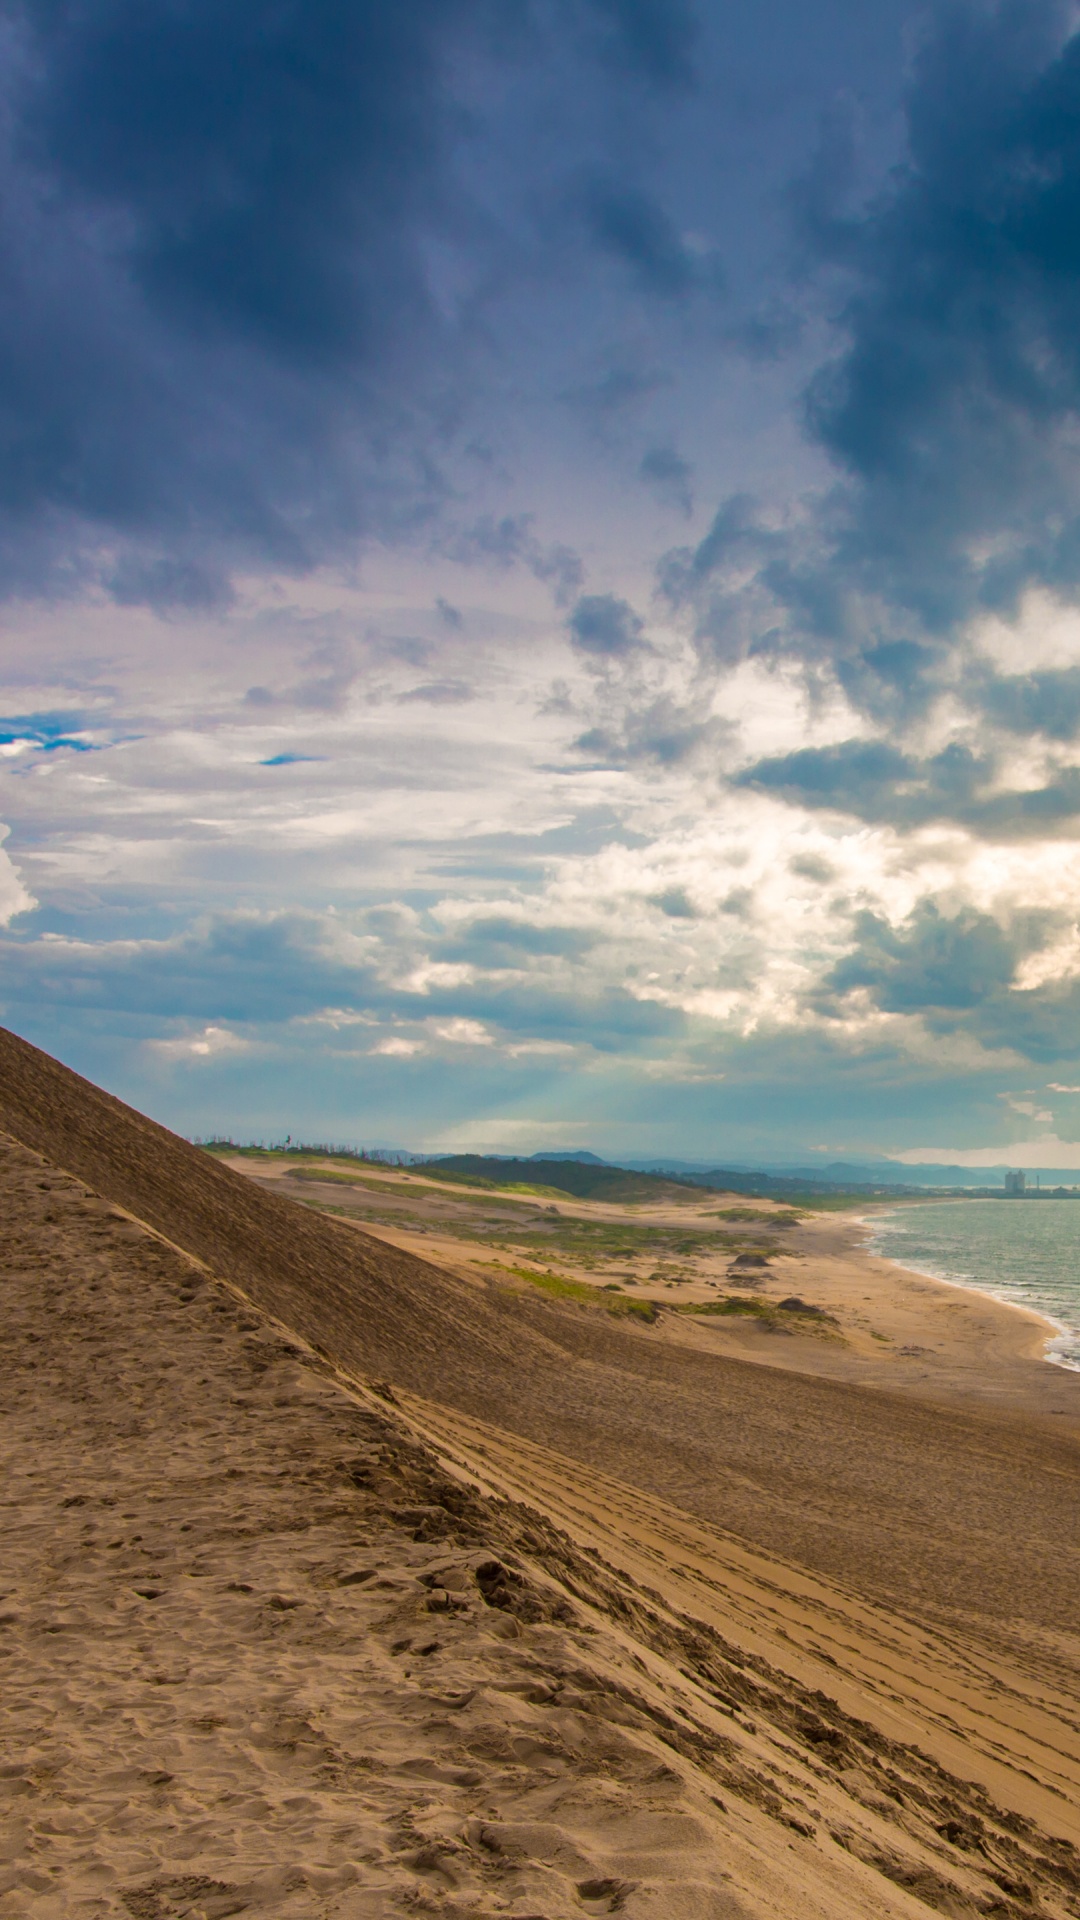 Brauner Sand in Der Nähe Von Gewässern Unter Blauem Himmel Und Weißen Wolken Tagsüber. Wallpaper in 1080x1920 Resolution